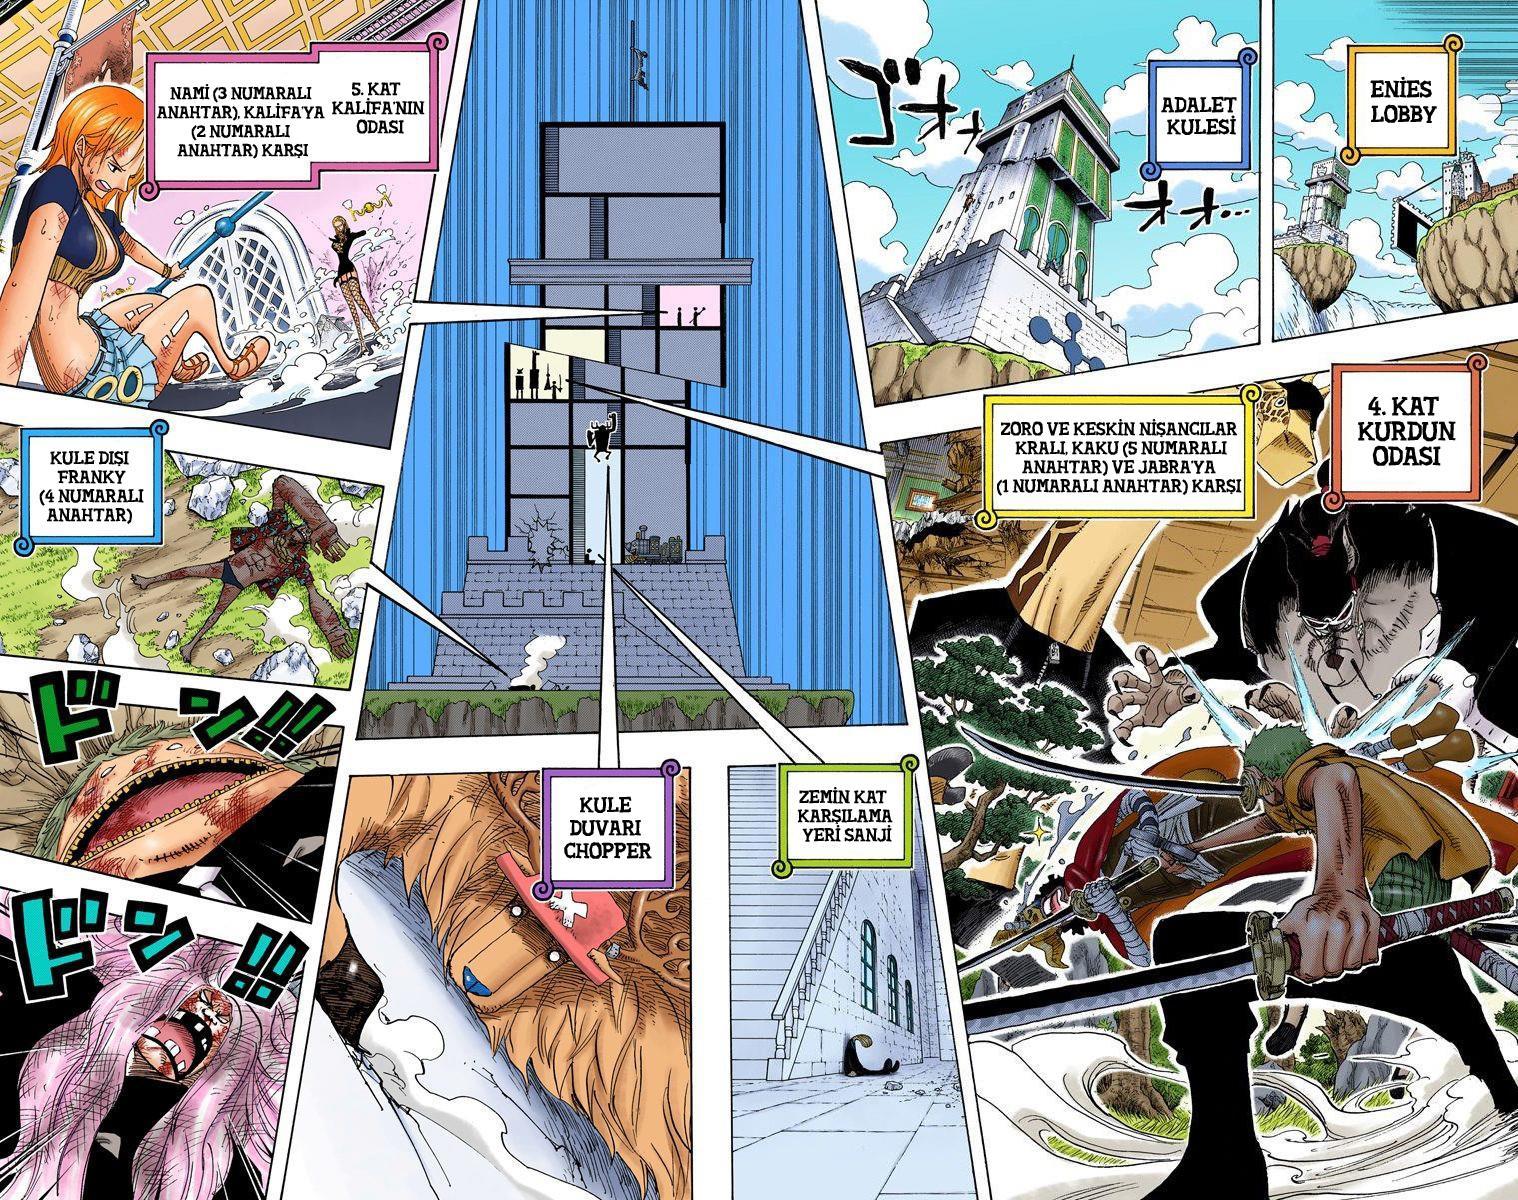 One Piece [Renkli] mangasının 0409 bölümünün 3. sayfasını okuyorsunuz.